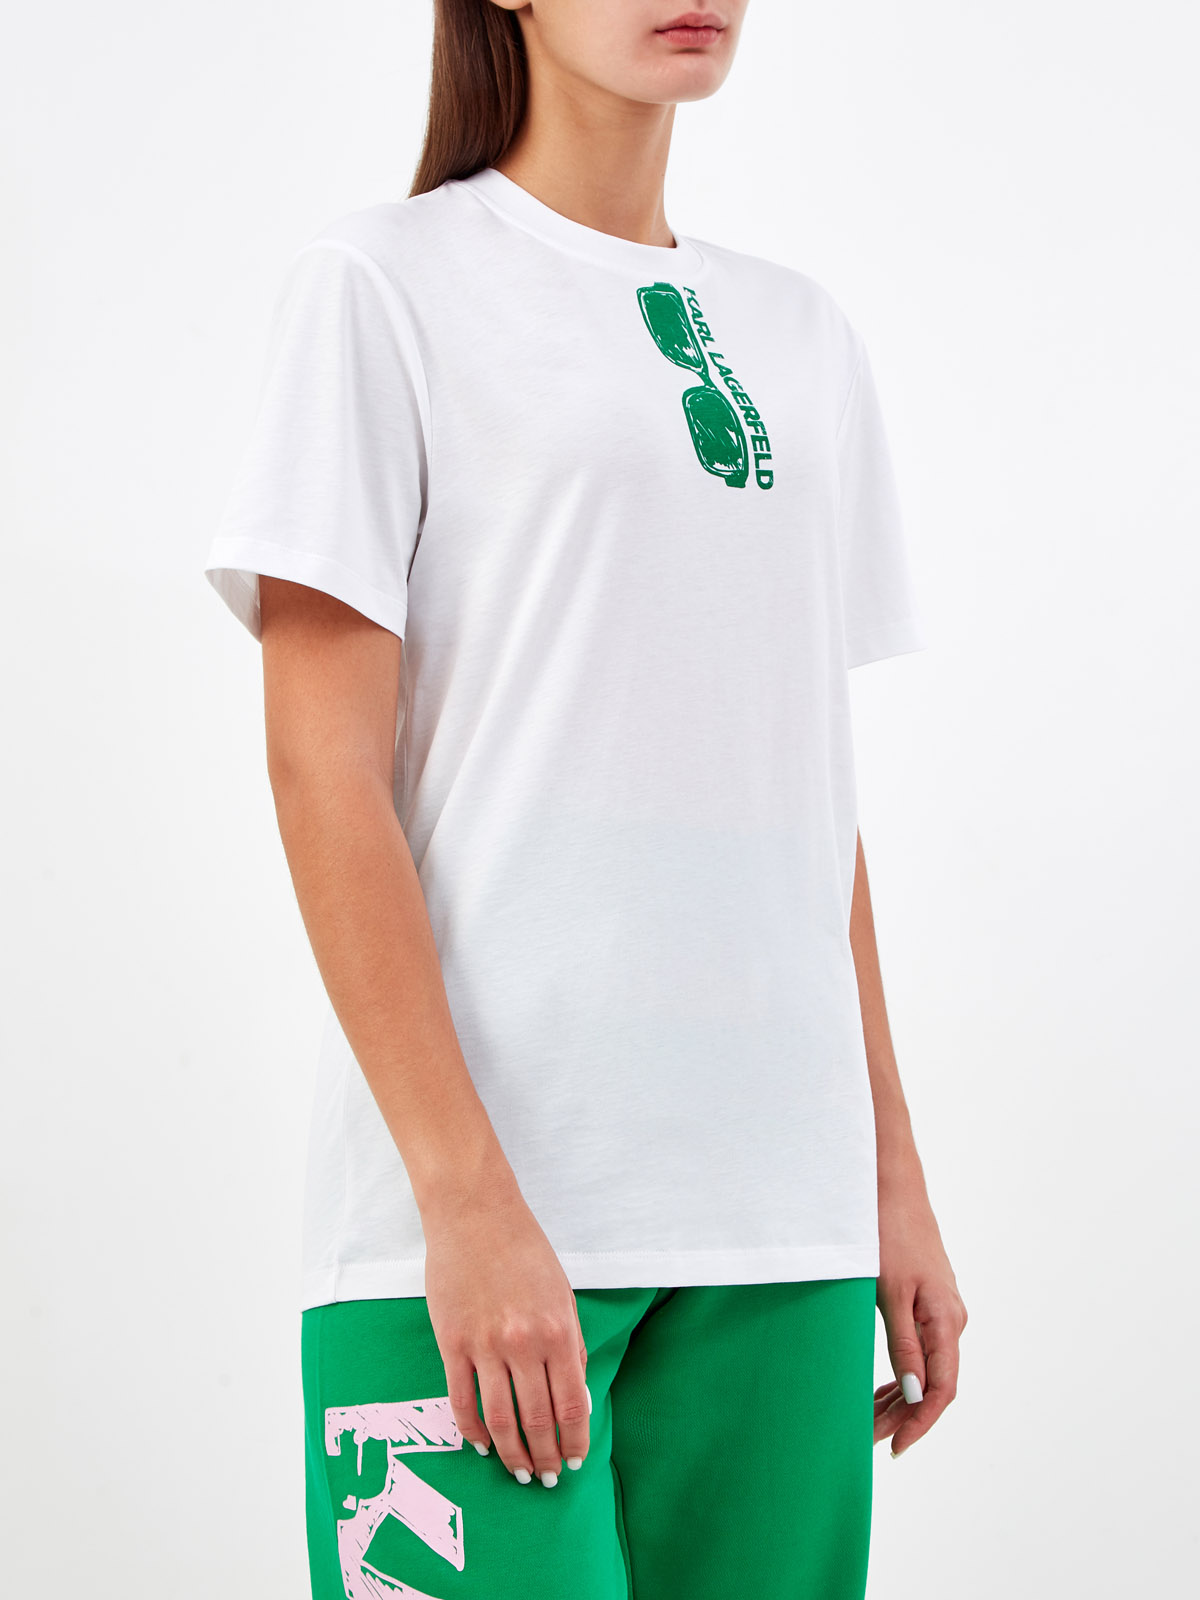 Свободная футболка из хлопка джерси с принтом KARL LAGERFELD, цвет белый, размер XS;S;M;L;XL - фото 3